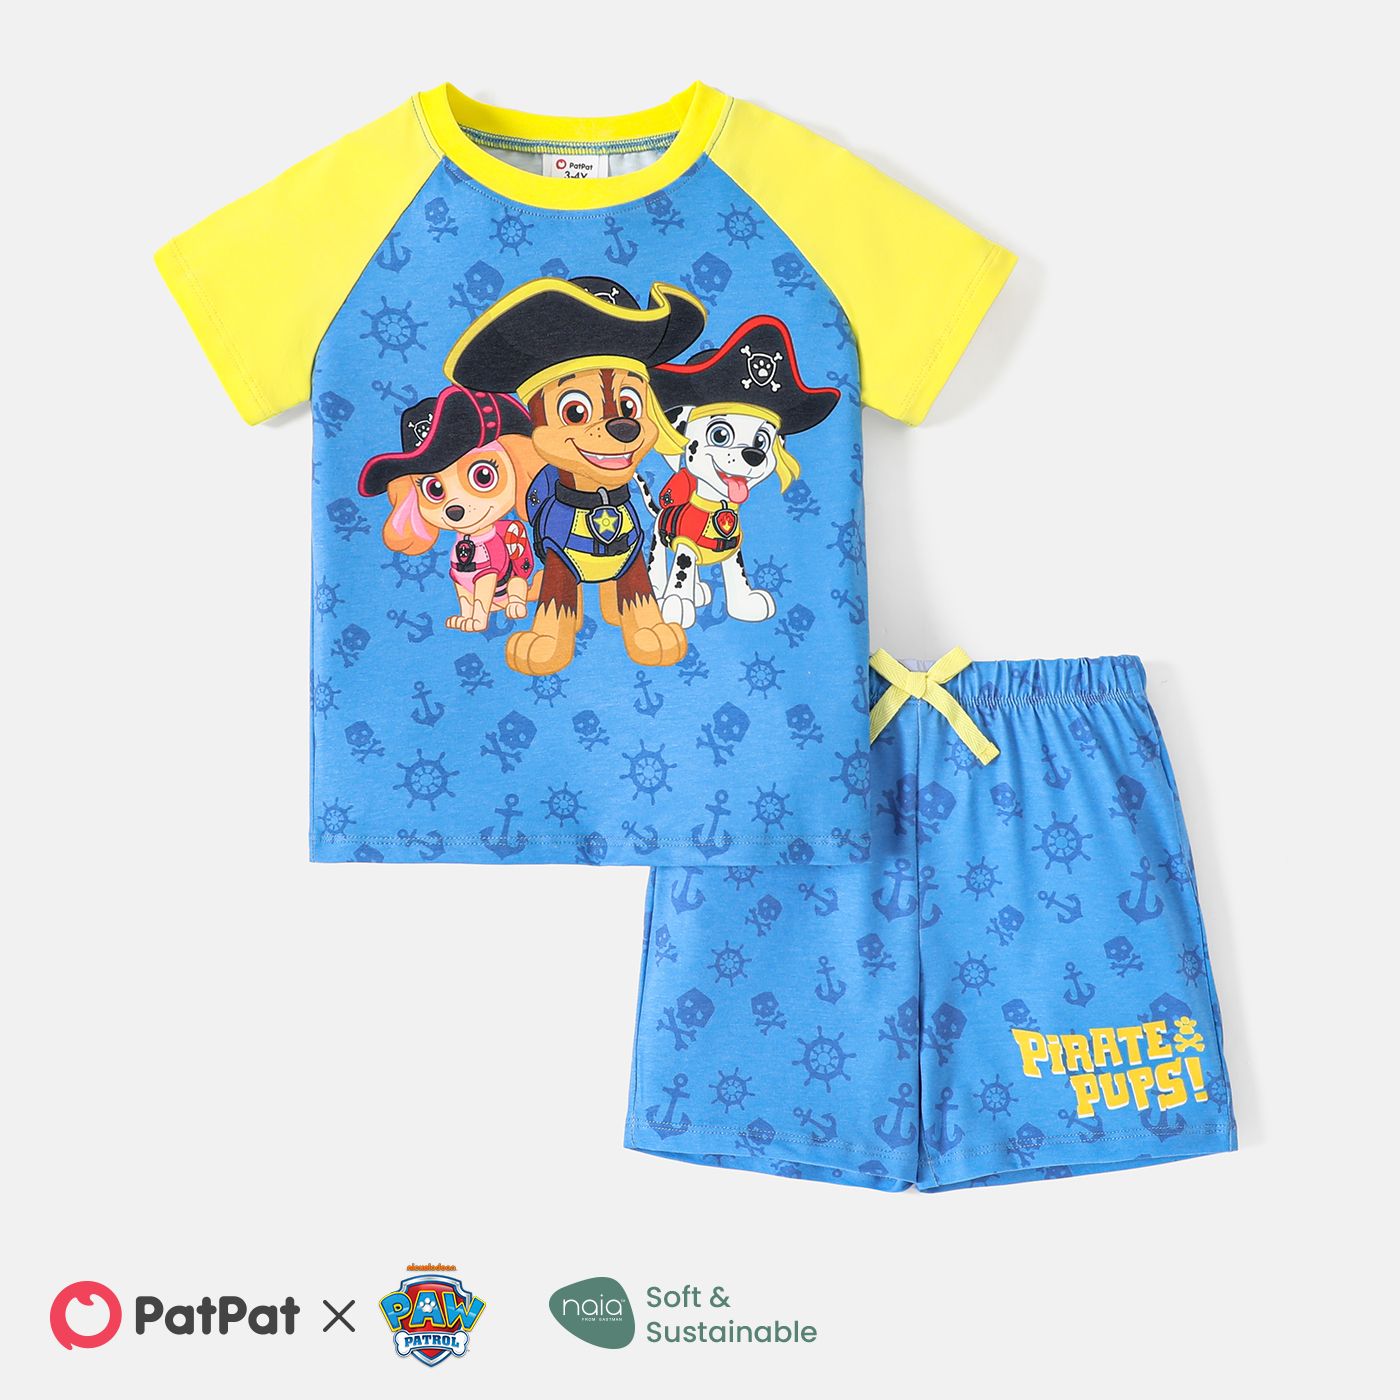 

PAW Patrol Toddler Boy 2pcs Naia™ Character Print Colorblock Tee and Shorts Set